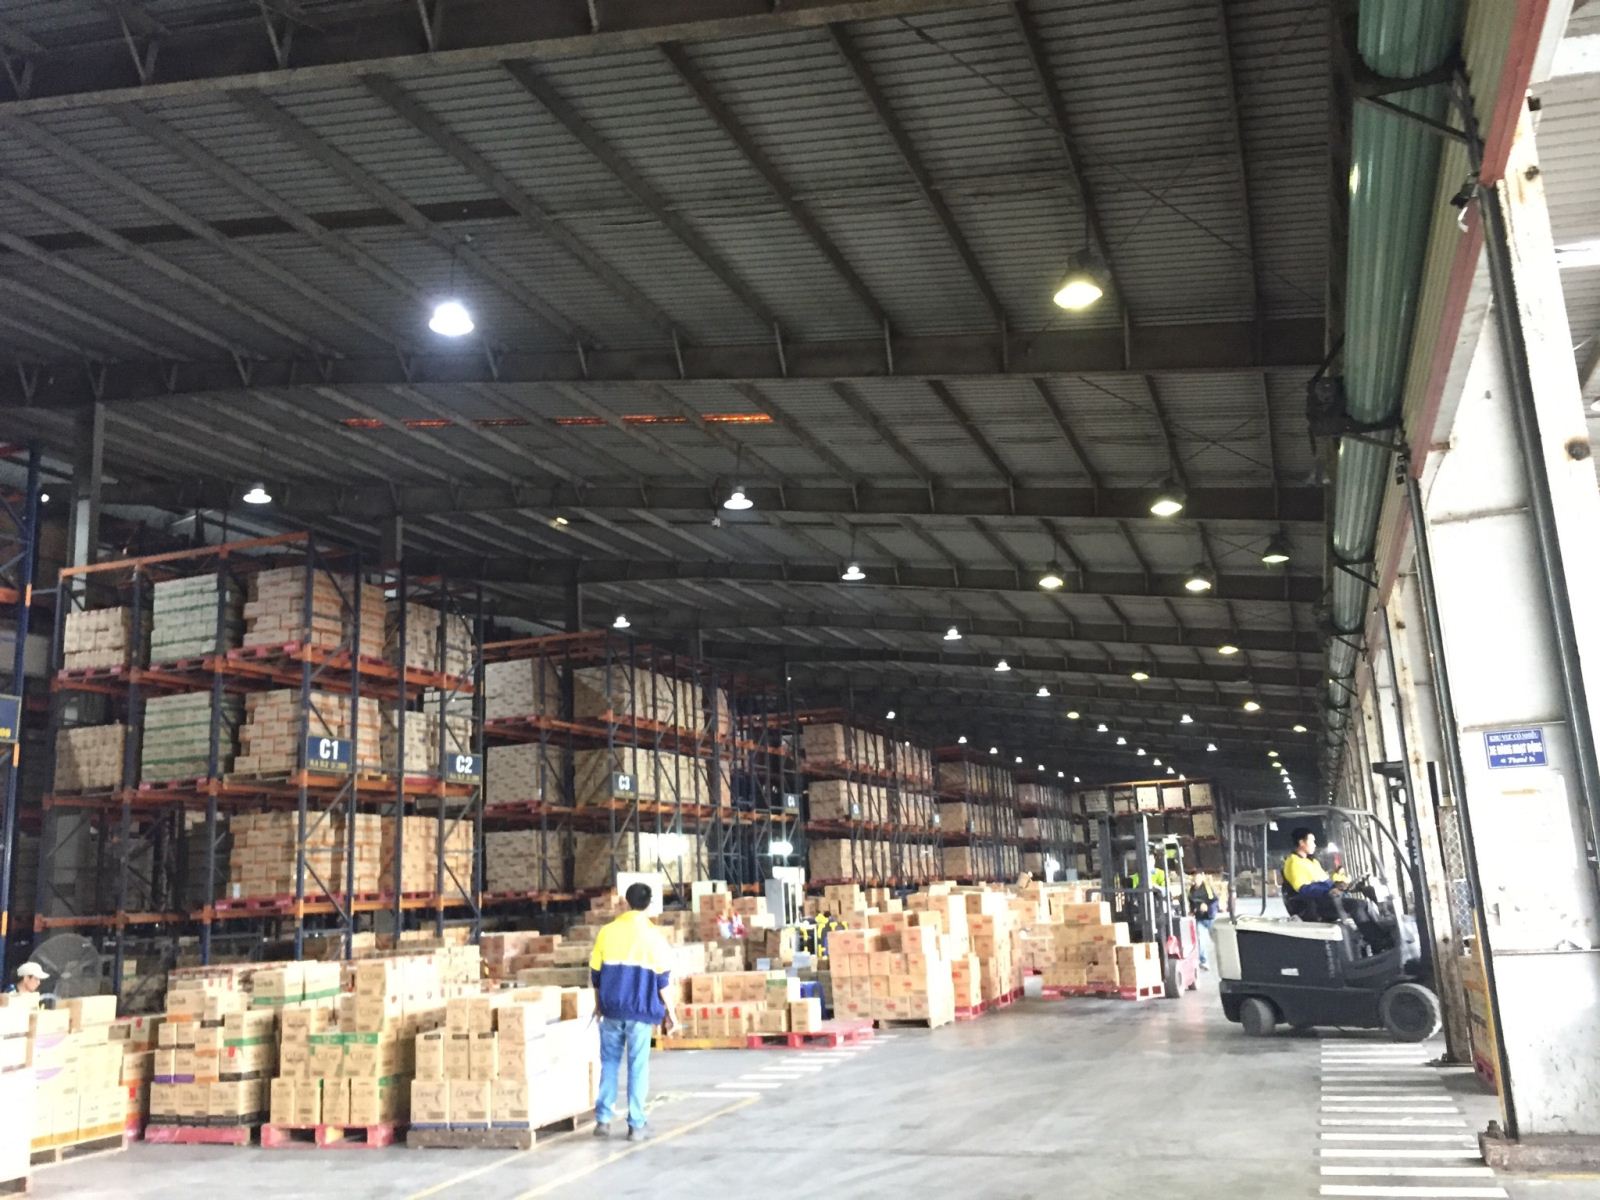 Hệ thống chiếu sáng nhà máy Linfox Logistics thuộc kho hàng Univer tại Bắc Ninh. Sử dụng đèn led nhà xưởng 150W